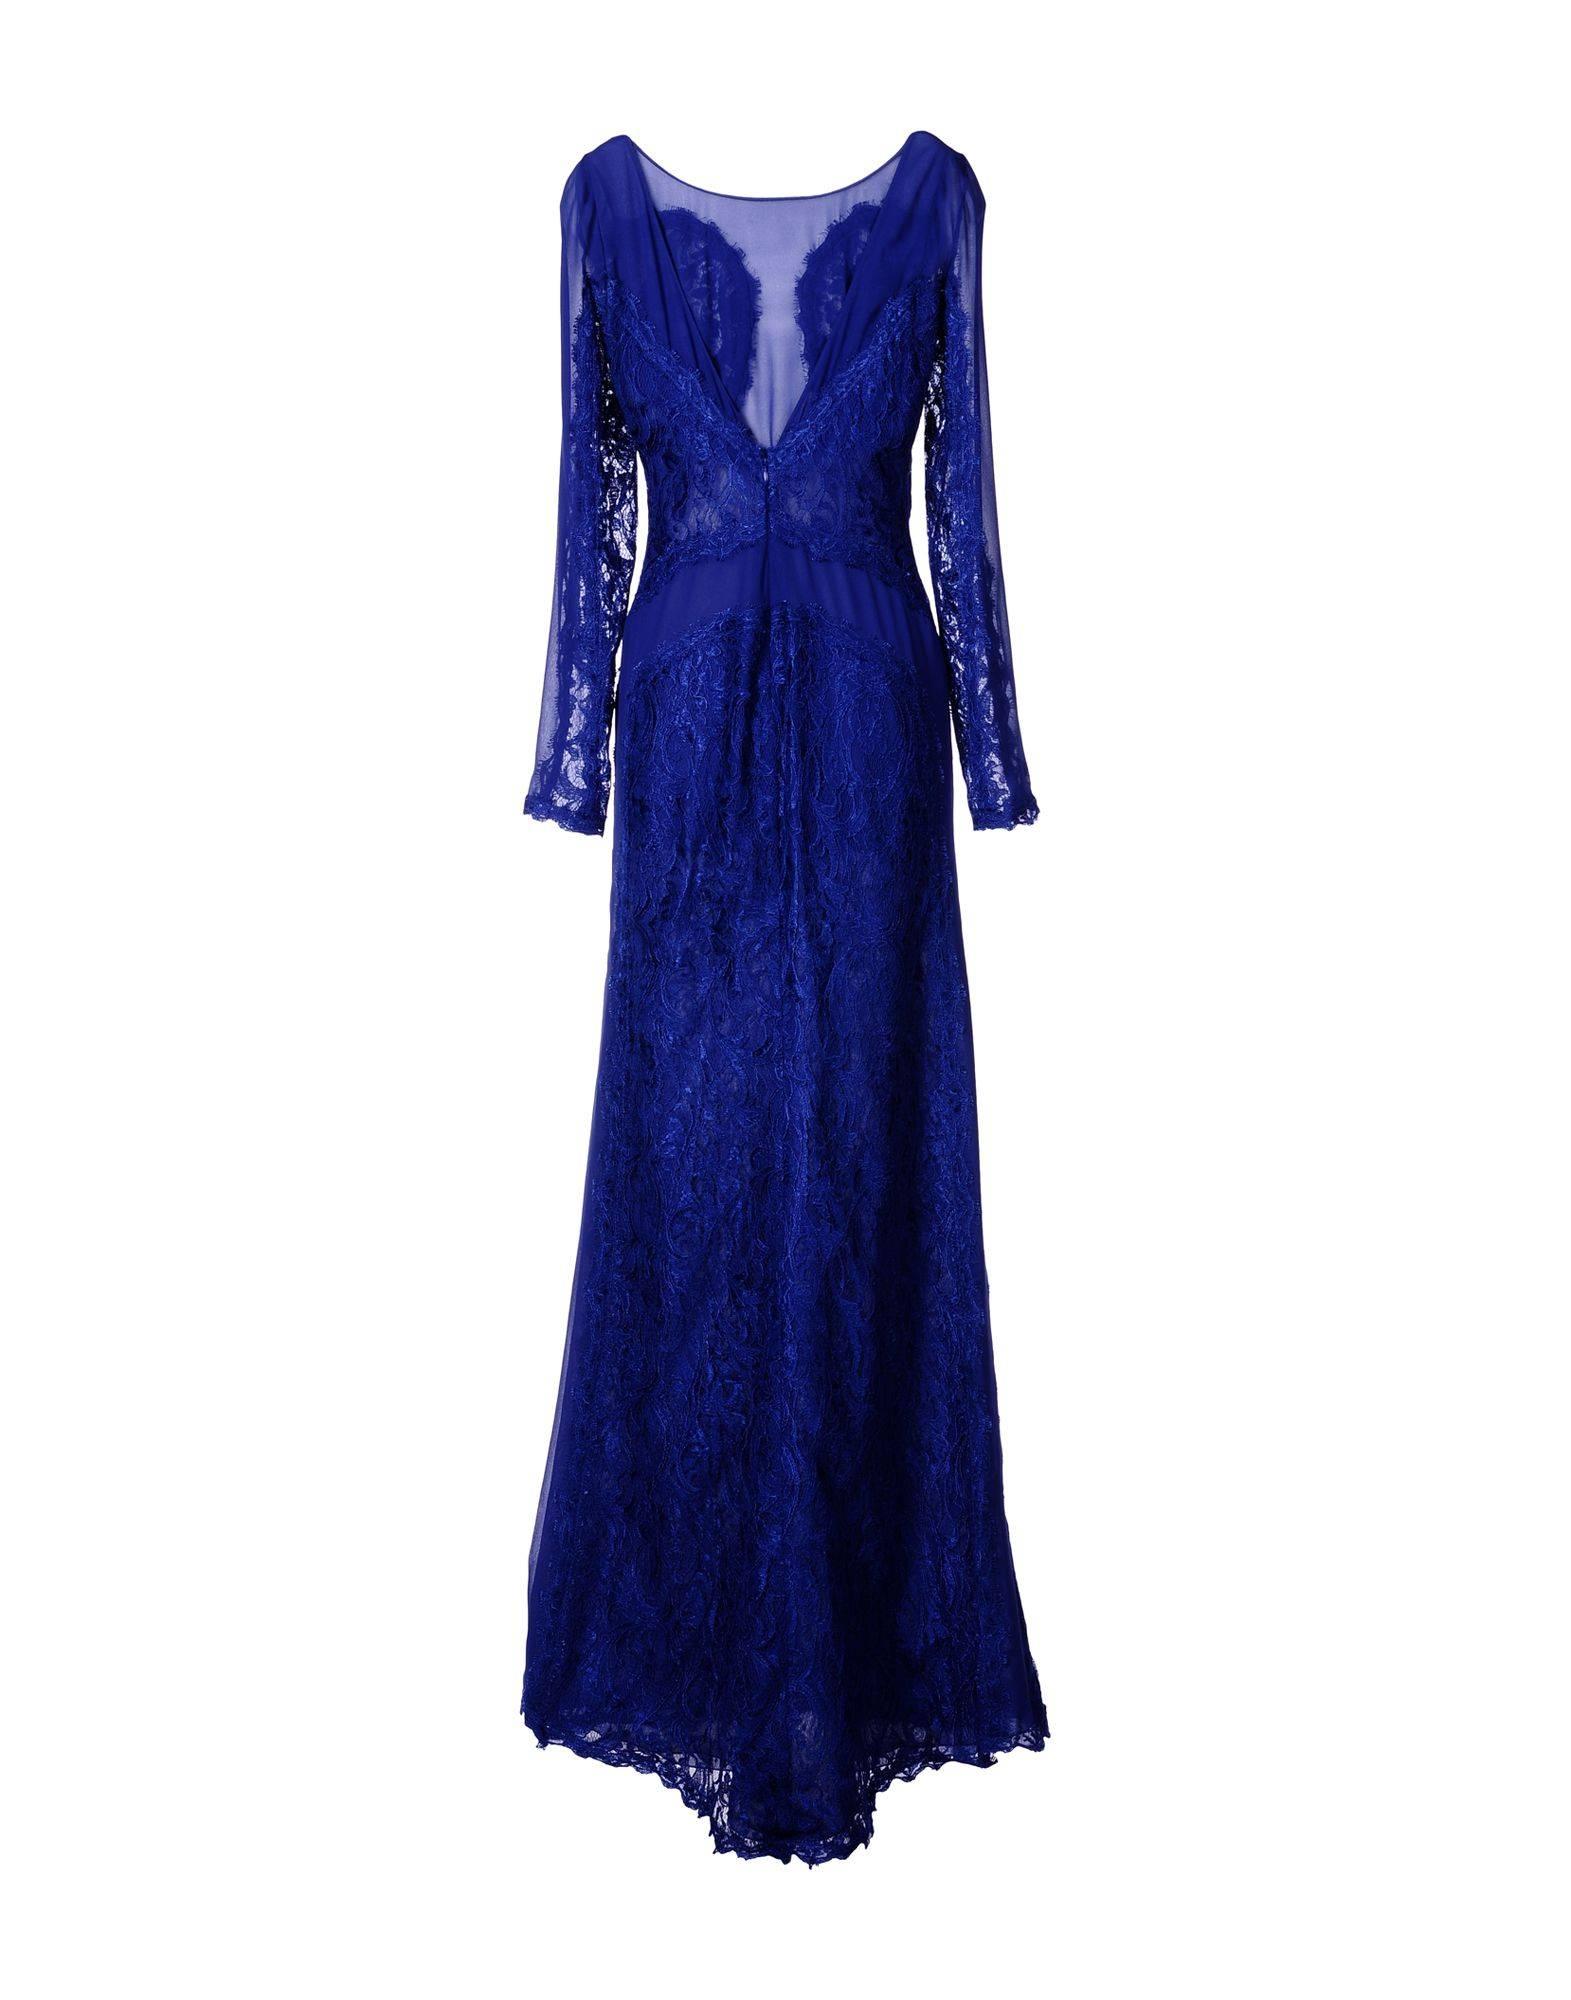 Nouveau Emilio Pucci Lace Cheer Gown
Taille italienne 40
Couleur - Bleu.
Entièrement doublé - 100% soie.
Fermeture à glissière arrière.
Mesures à plat : Longueur sur le devant - 60 pouces, Longueur sur le dos - 65 pouces, Taille - 13.5 pouces,